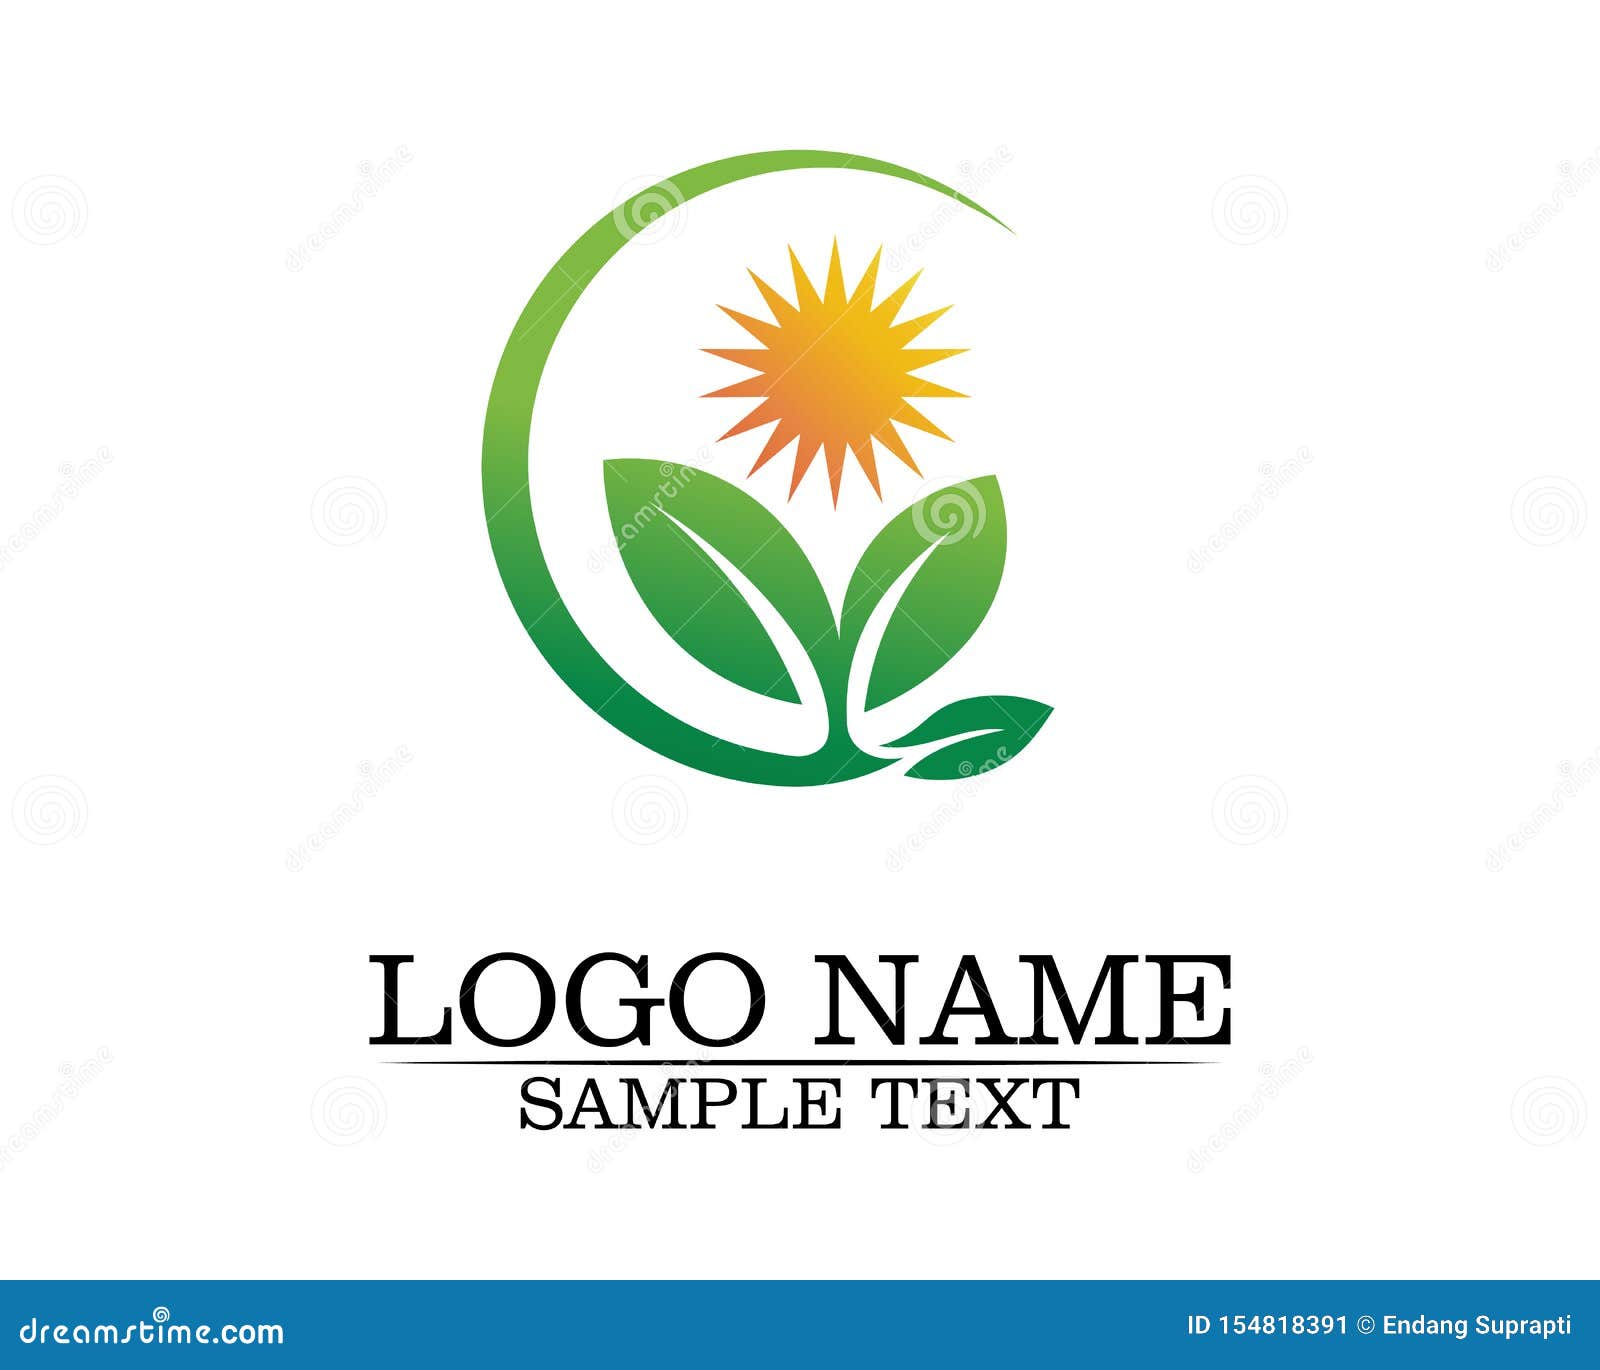 Progettazione di logo di vettore della foglia dell'albero, concetto ecologico. Tree leaf vector logo design, eco-friendly concept